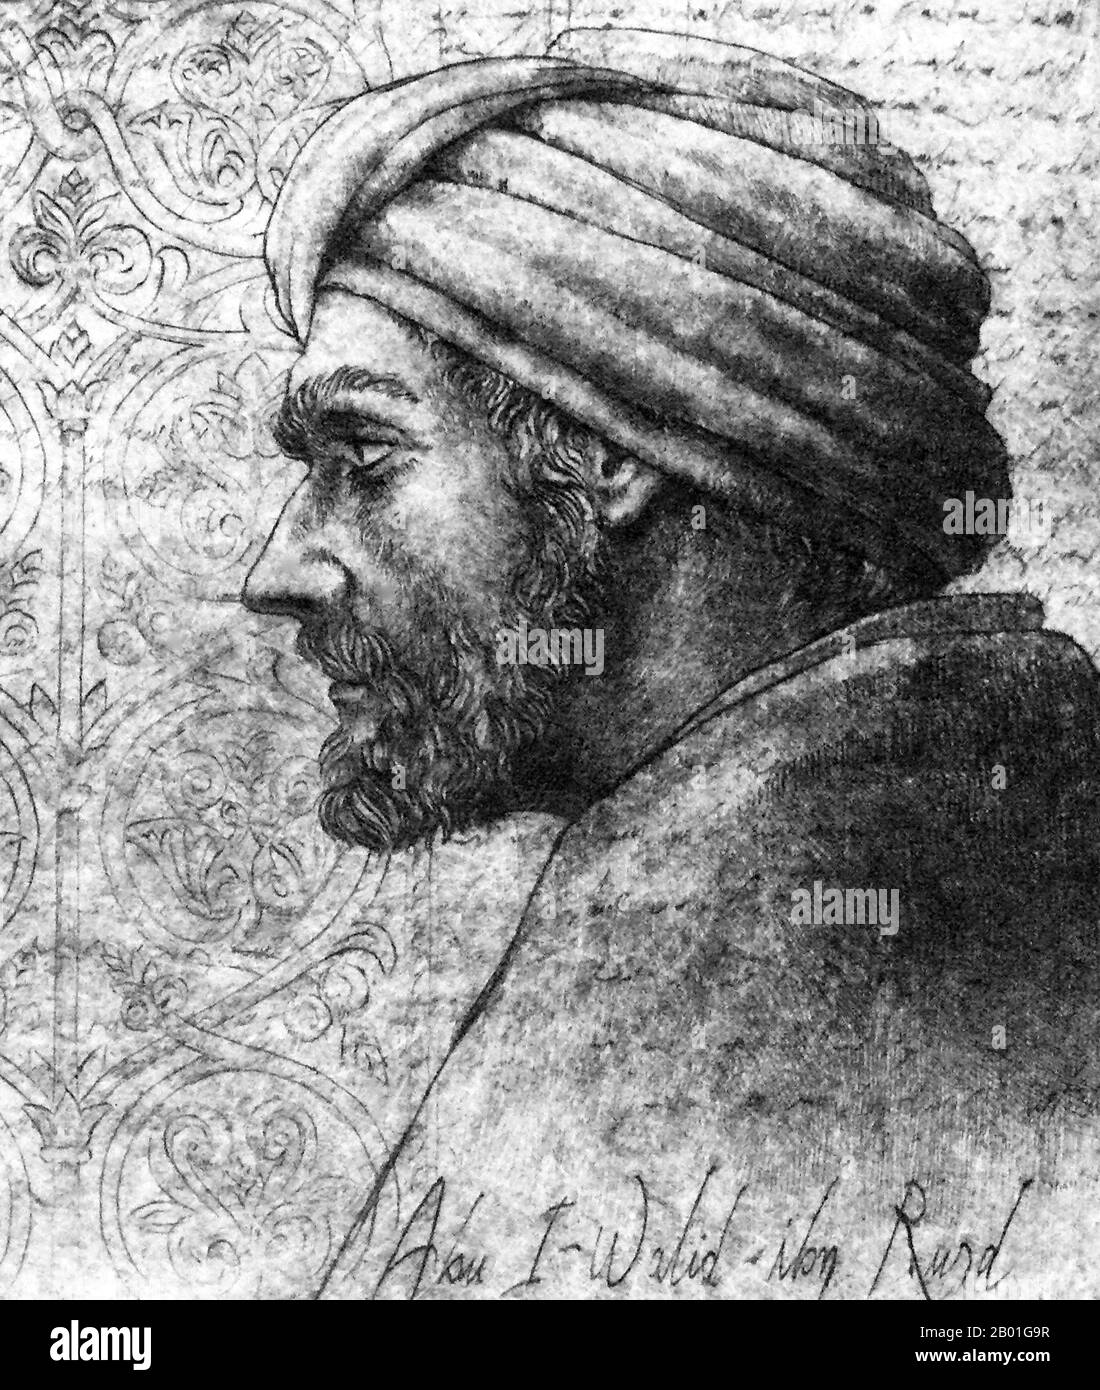 Espagne/Al-Andalus: Ibn Rushd (1126 - 10 décembre 1198), 12th siècle. Abū l-Walīd Muḥammad bin ʾAḥmad bin Rušd, mieux connu sous le nom d'Ibn Rushd et dans la littérature européenne sous le nom d'Averroes, était un polymath musulman; un maître de la philosophie aristotélicienne, de la philosophie islamique, de la théologie islamique, de la loi et de la jurisprudence Maliki, de la logique, de la psychologie, de la politique, de la théorie de la musique arabe, et les sciences de la médecine, de l'astronomie, de la géographie, des mathématiques, de la physique et de la mécanique céleste. Il est né à Cordoue, Al Andalus, Espagne moderne, et est mort à Marrakech, au Maroc. Son école de philosophie est connue sous le nom d'Averroisme. Banque D'Images